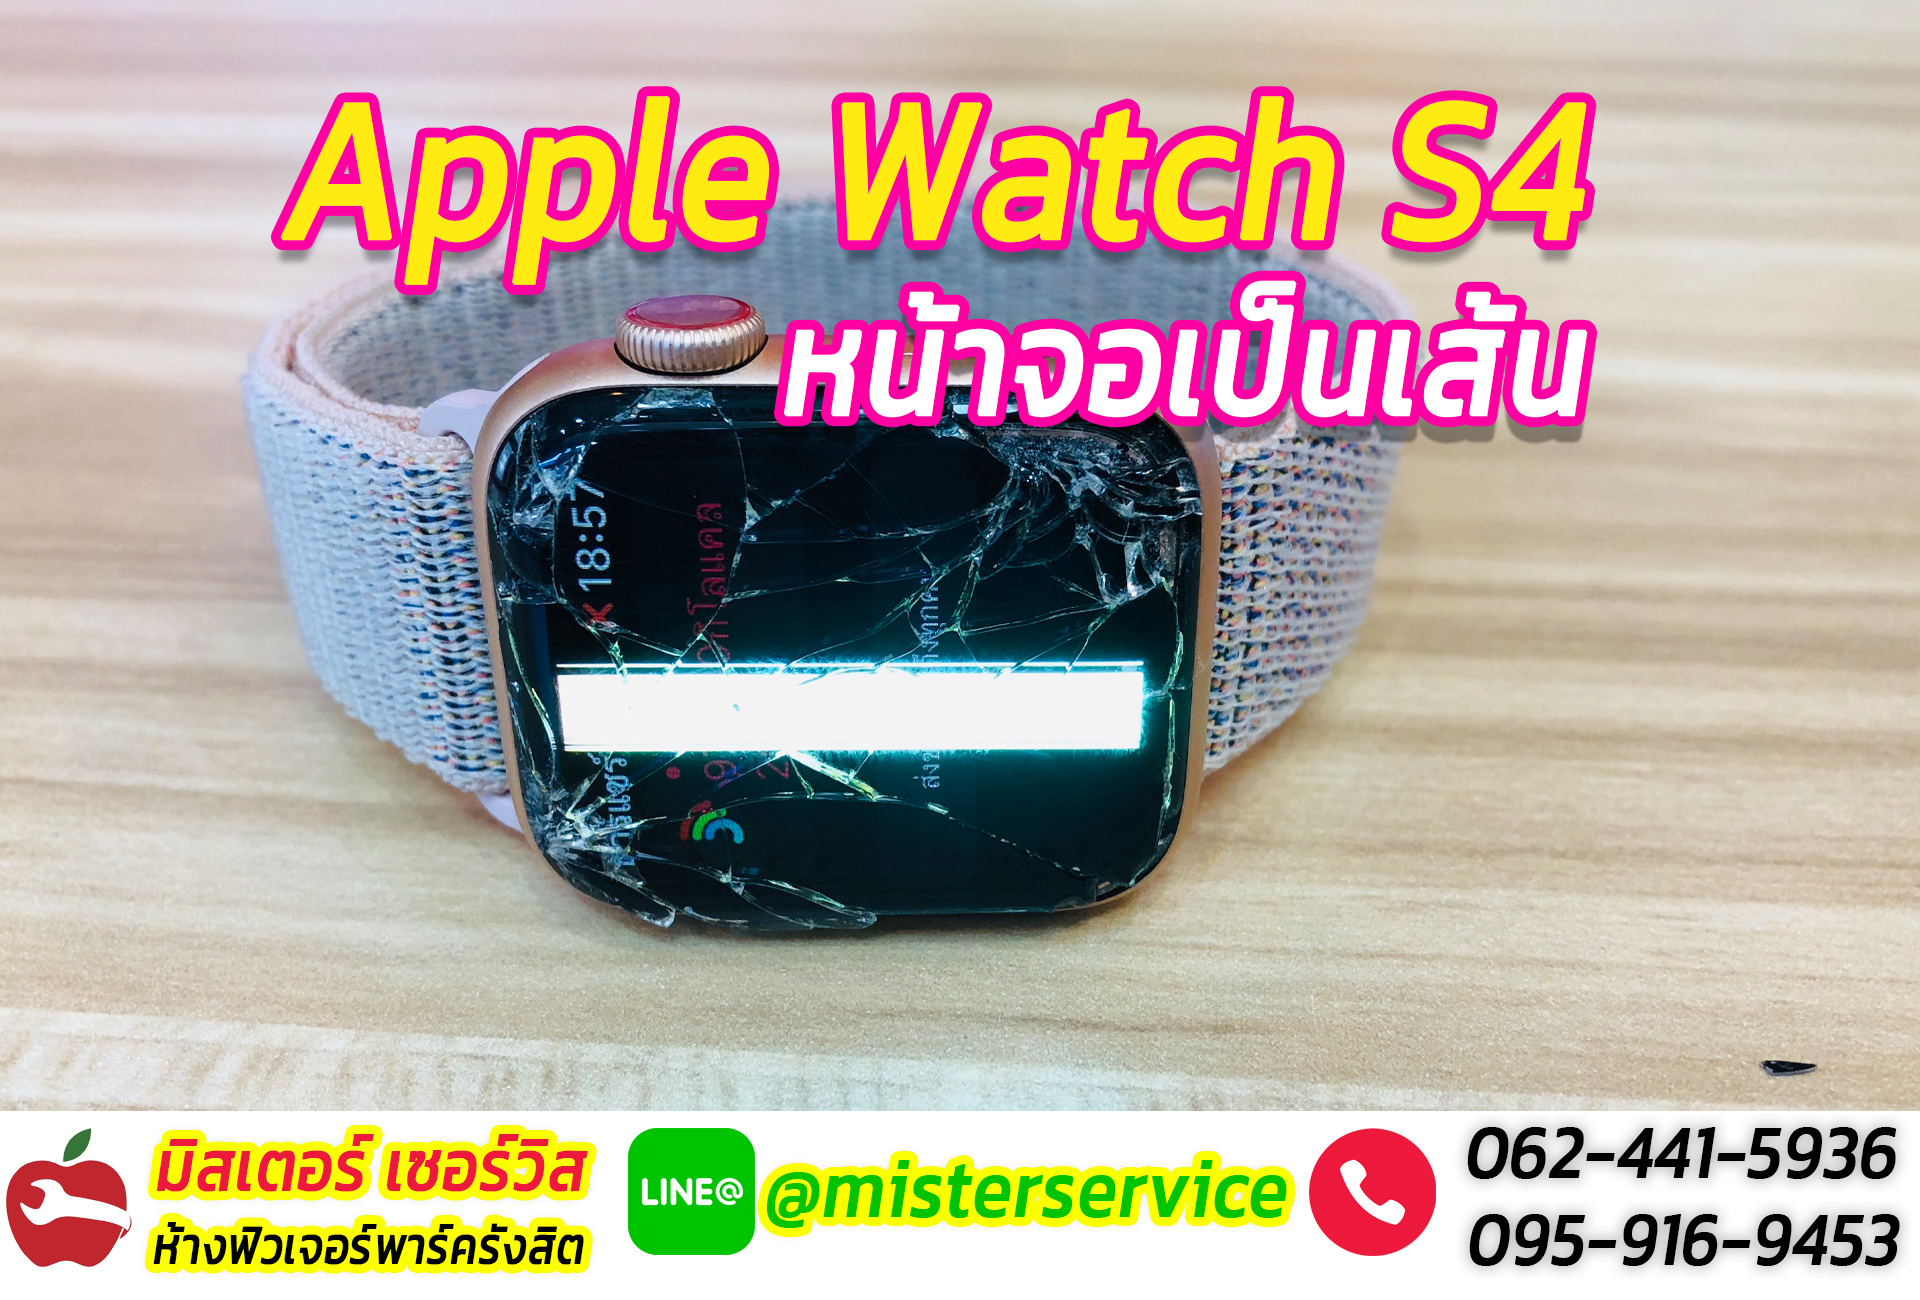 ซ่อม Apple Watch สกลนคร หน้าจอแตก เปิดไม่ติด